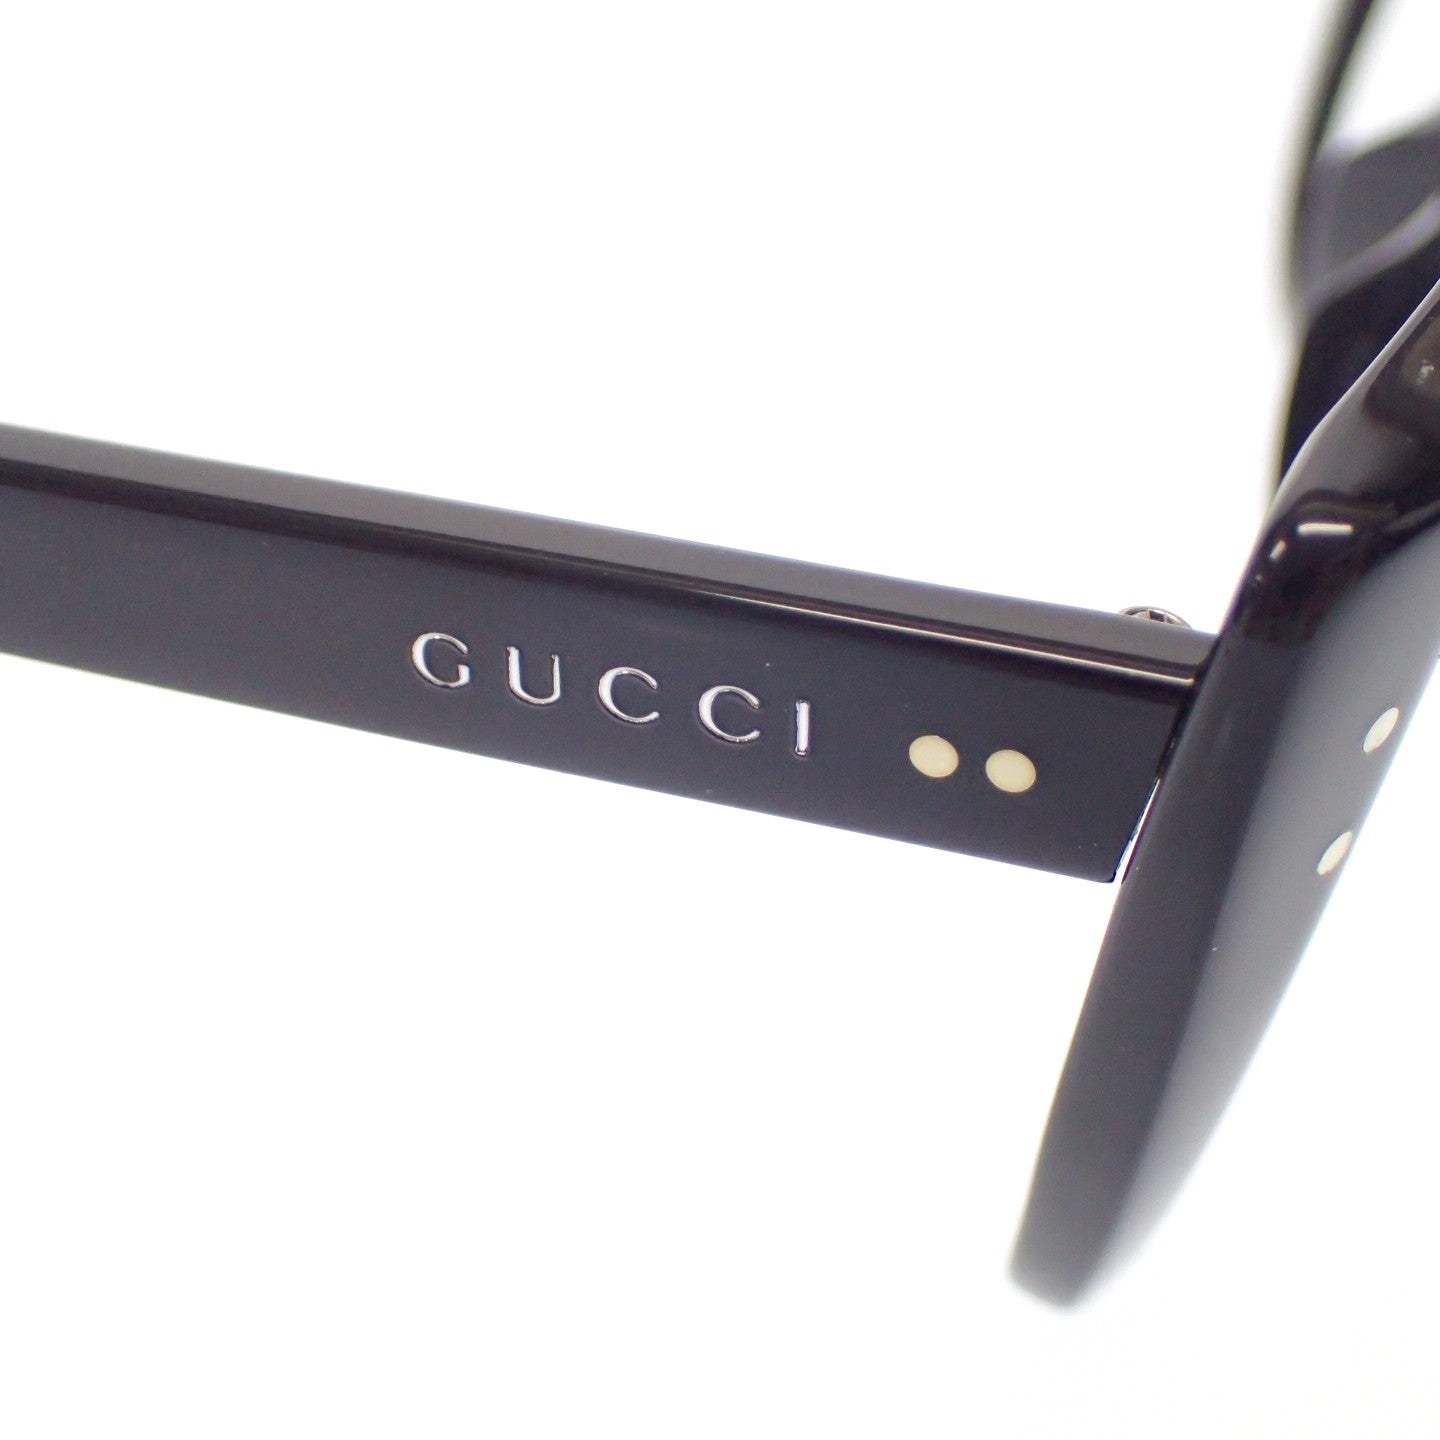 未使用 ◆ Gucci 日期眼镜 透明镜片 54□18-145 GG0474O 黑色 带镜盒 女士 GUCCI [AFI14] 